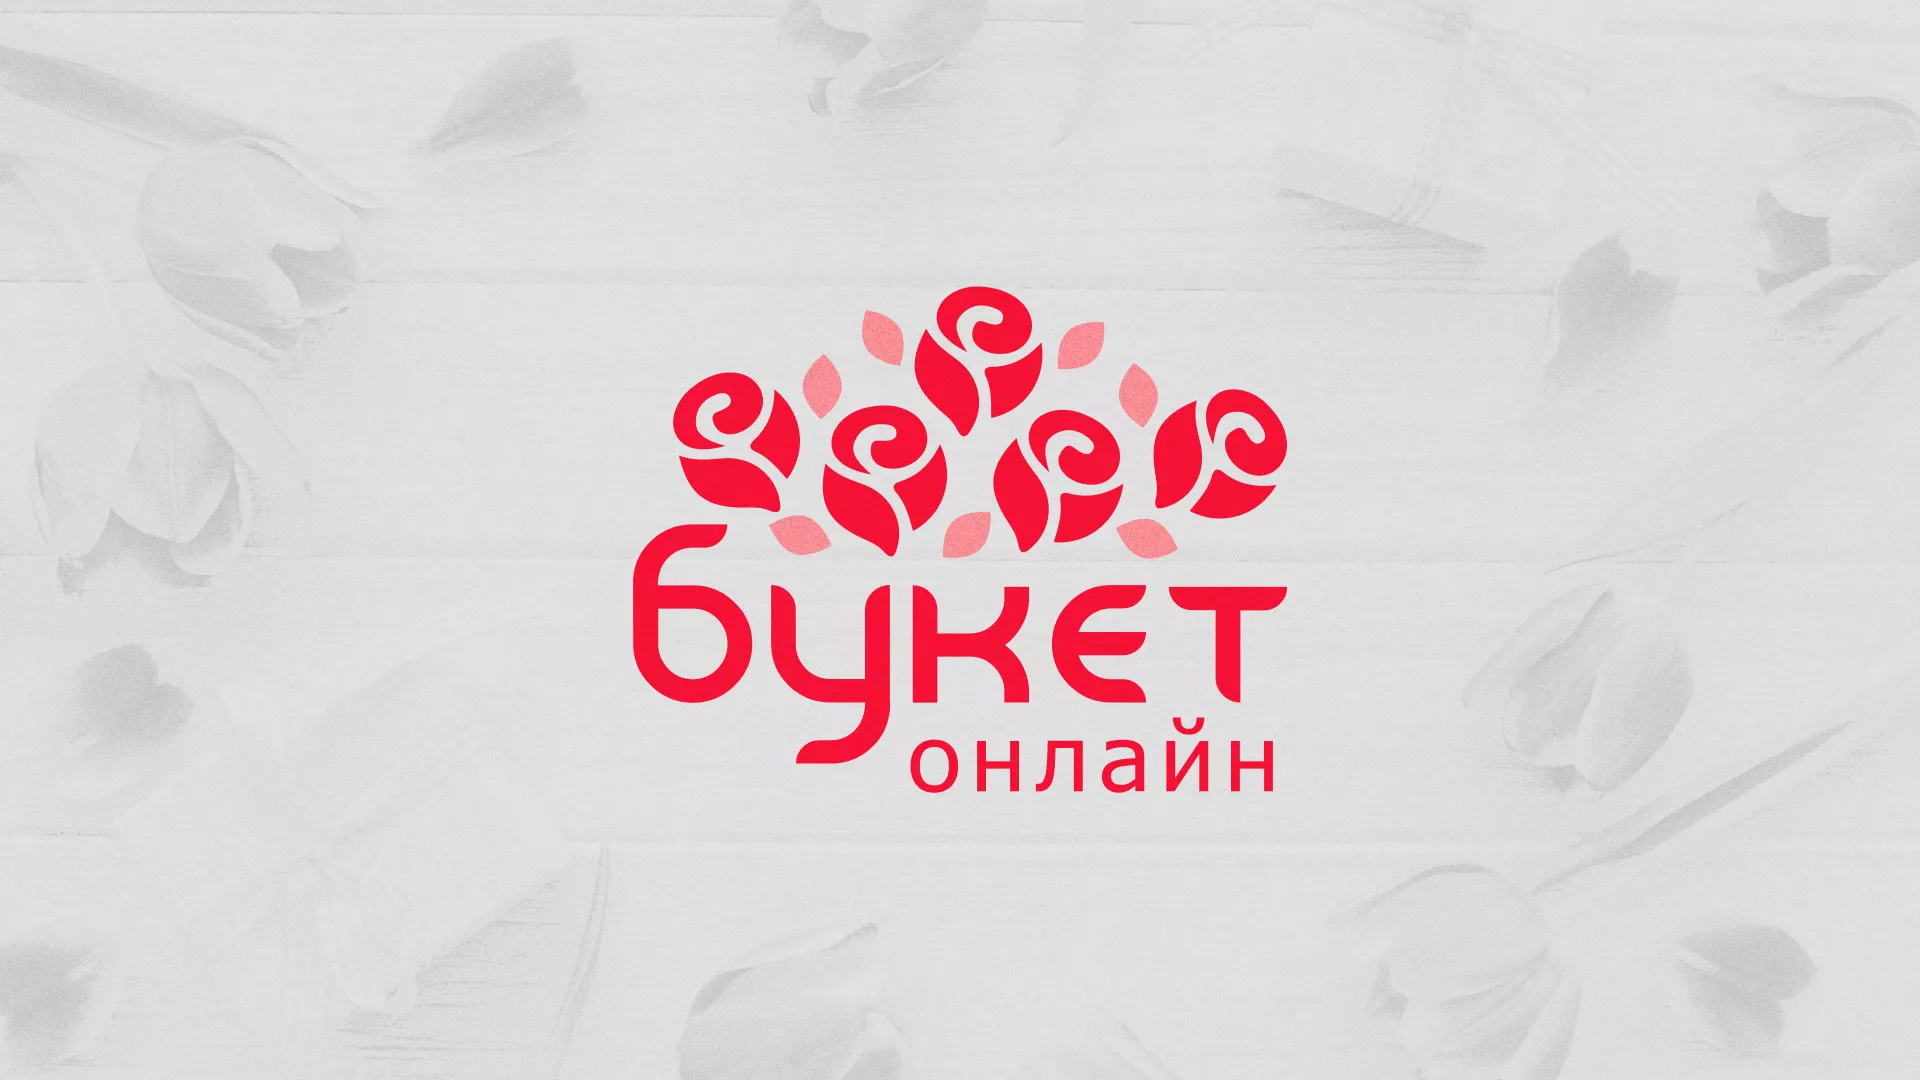 Создание интернет-магазина «Букет-онлайн» по цветам в Рыбинске